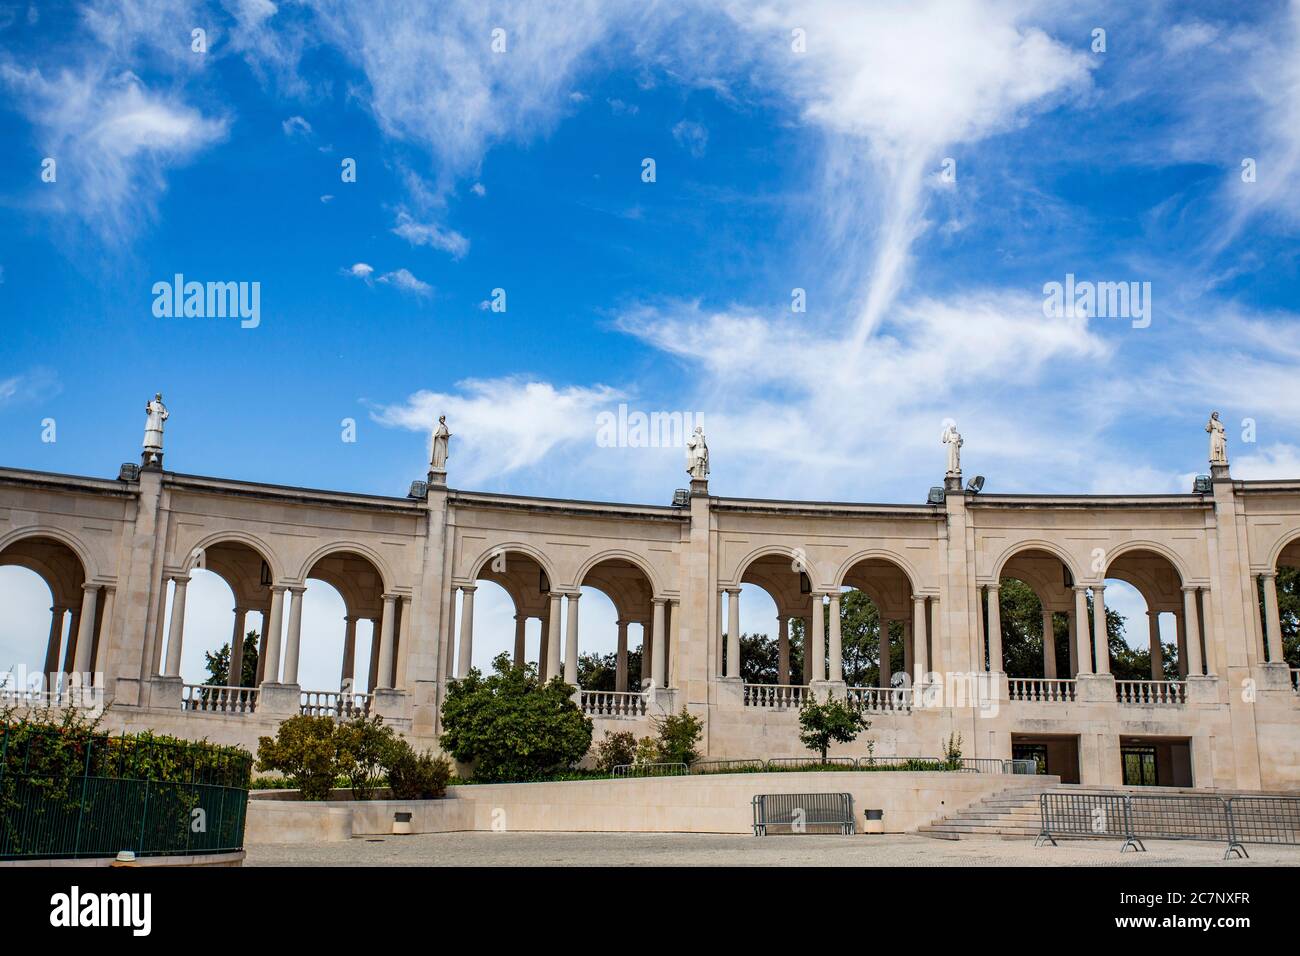 Vue partielle sur la Colonnade, décorée des statues de saints, dans le Sanctuaire de notre-Dame de Fatima, Portugal Banque D'Images